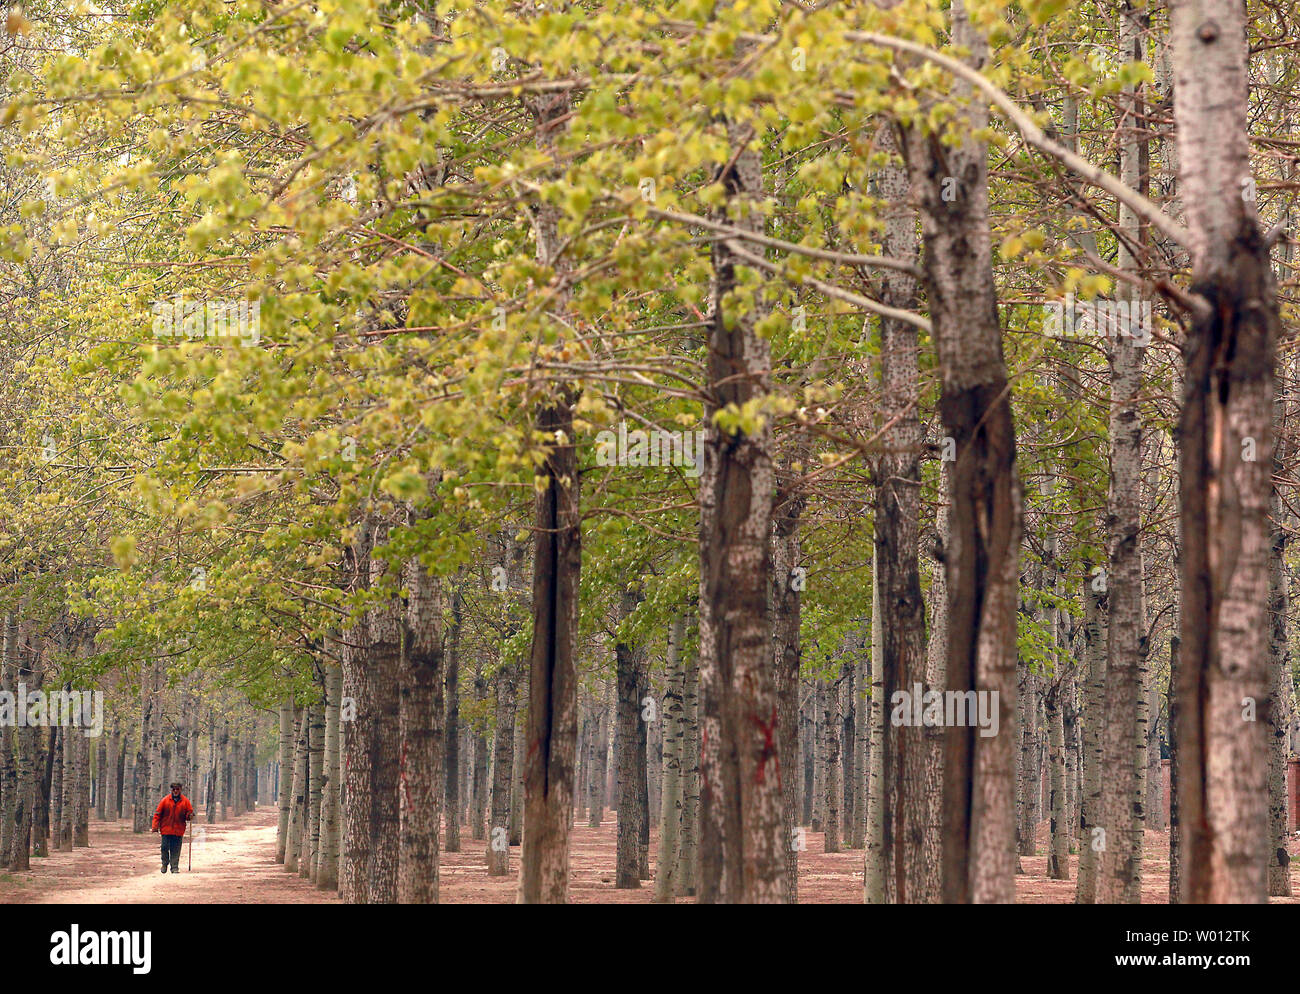 Ein chinesischer Mann geht ein Weg durch einen Baum Barriere gepflanzt, die Bodenerosion und -verschmutzung, Peking am 22. April 2013 zu kämpfen. Eine dreijährige Untersuchung hat ergeben, dass fast 40 Prozent der chinesischen Hoheitsgebiets von Bodenerosion durch fruchtbare Entwicklung. UPI/Stephen Rasierer Stockfoto